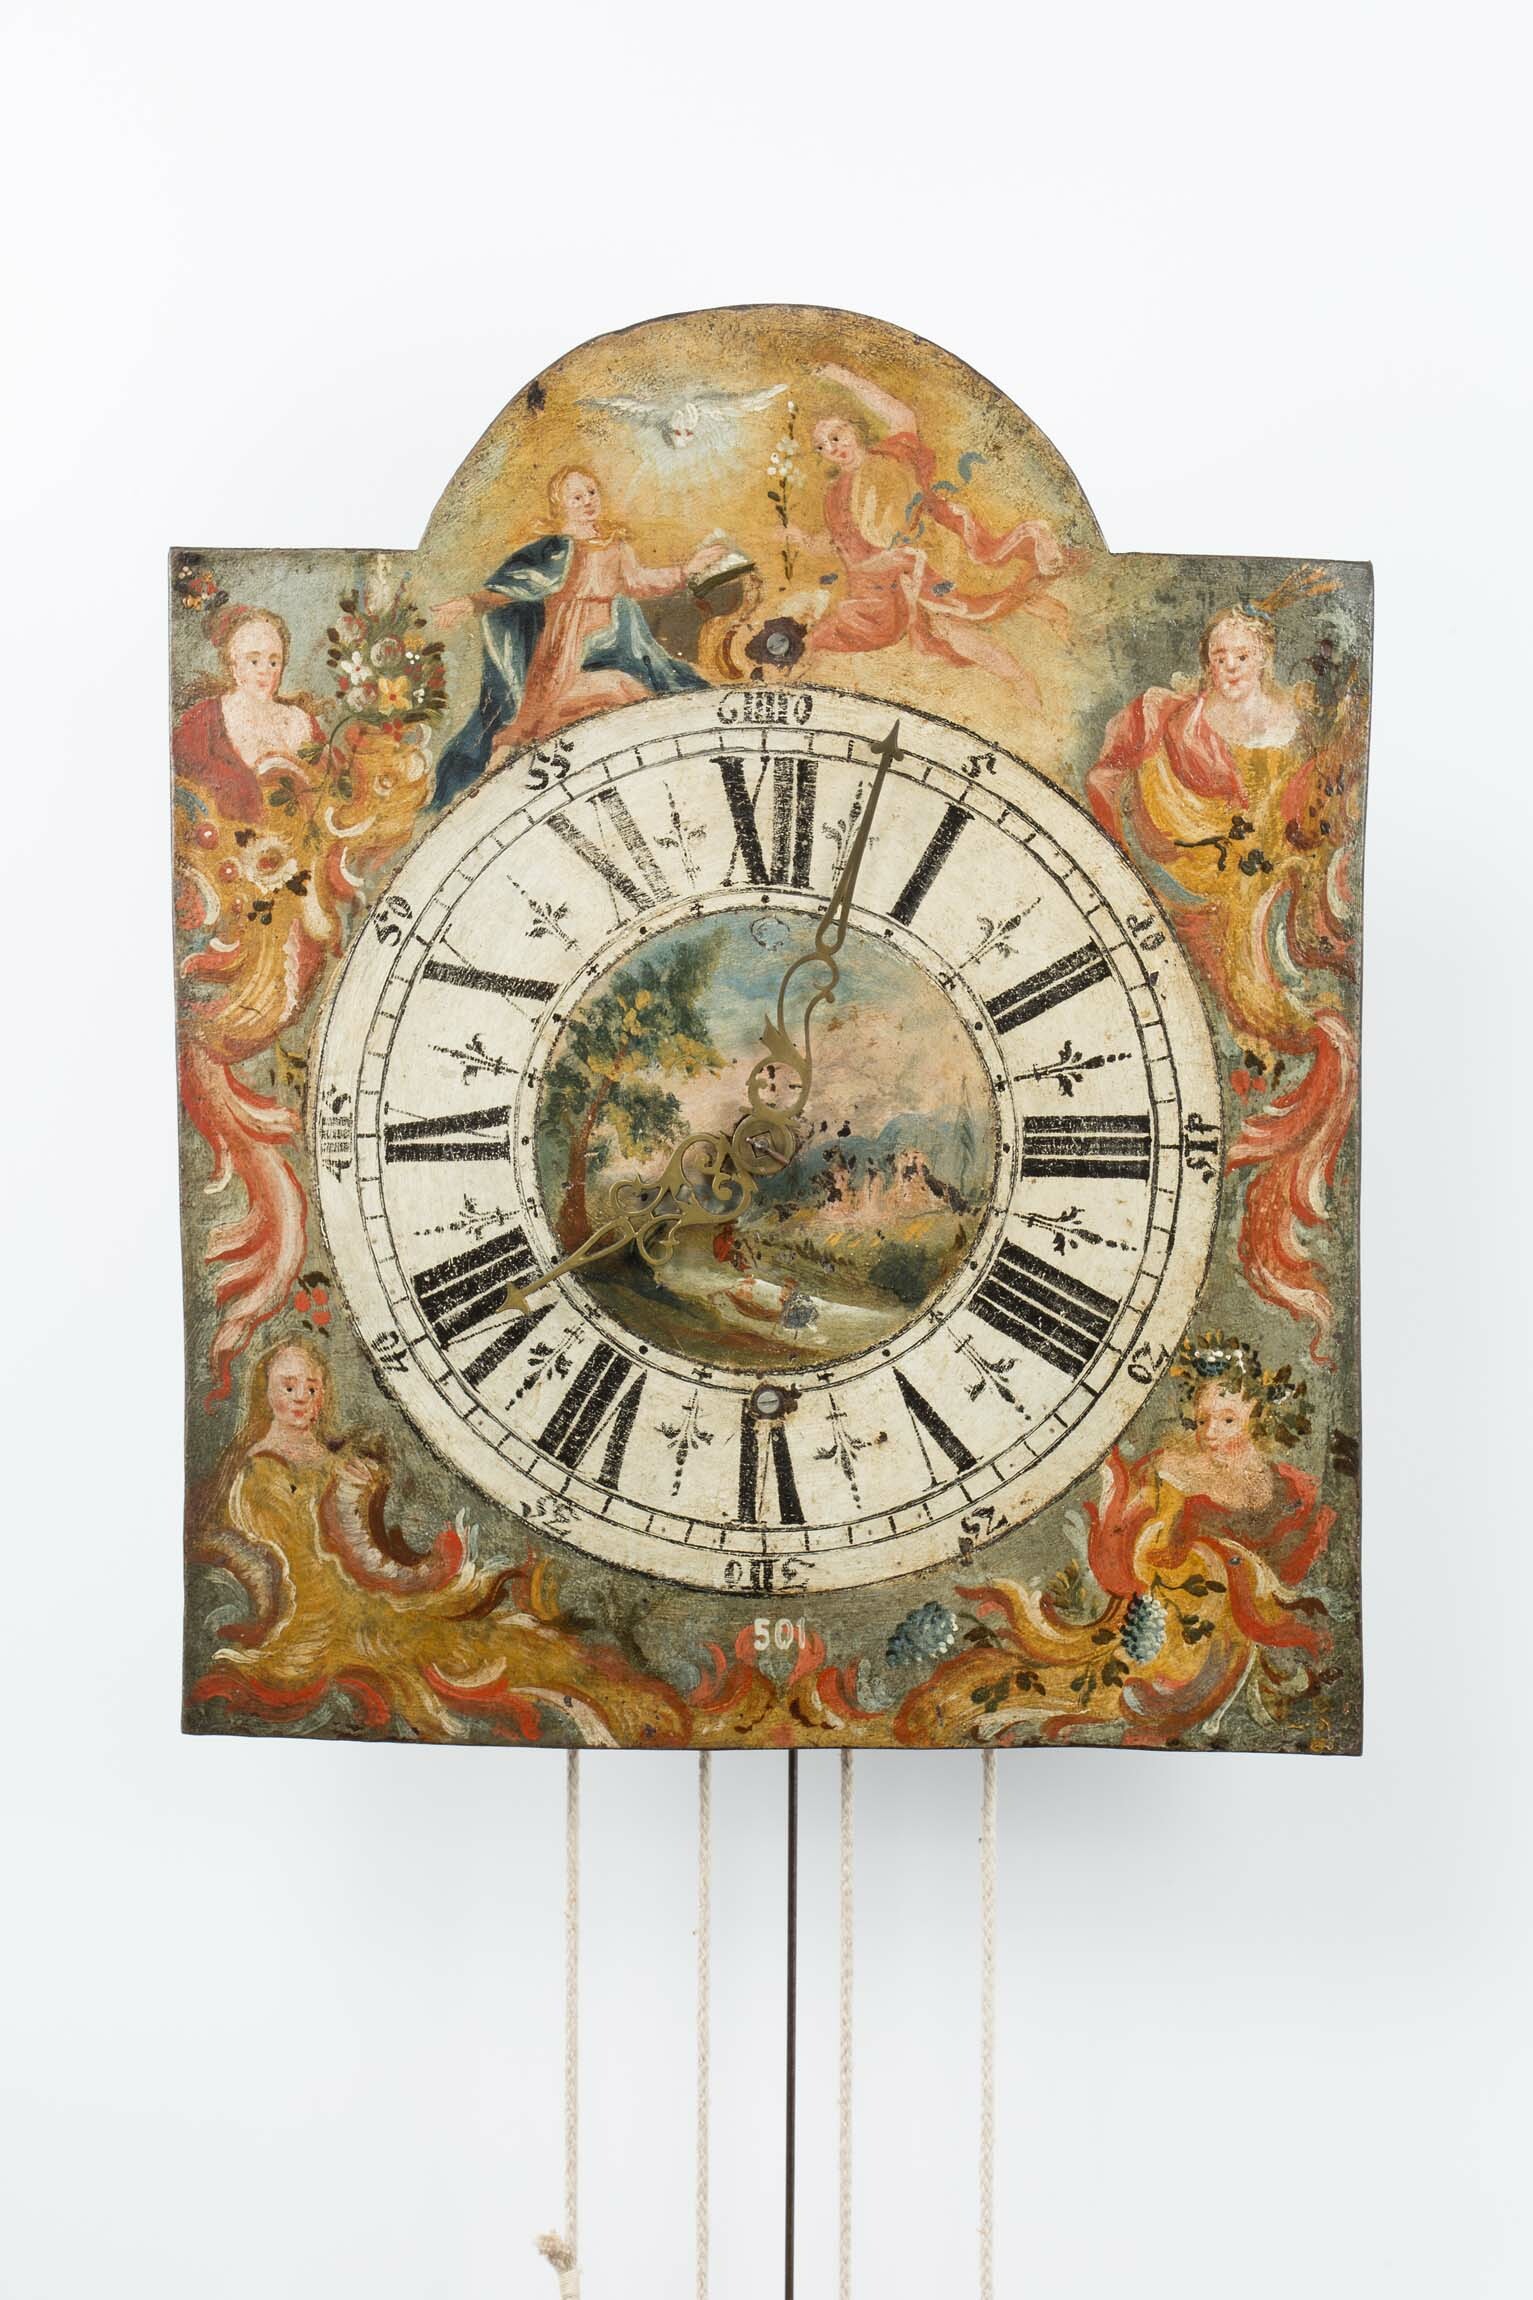 Pendeluhr, Mitteleuropa, Mitte 18. Jahrhundert (Deutsches Uhrenmuseum CC BY-SA)